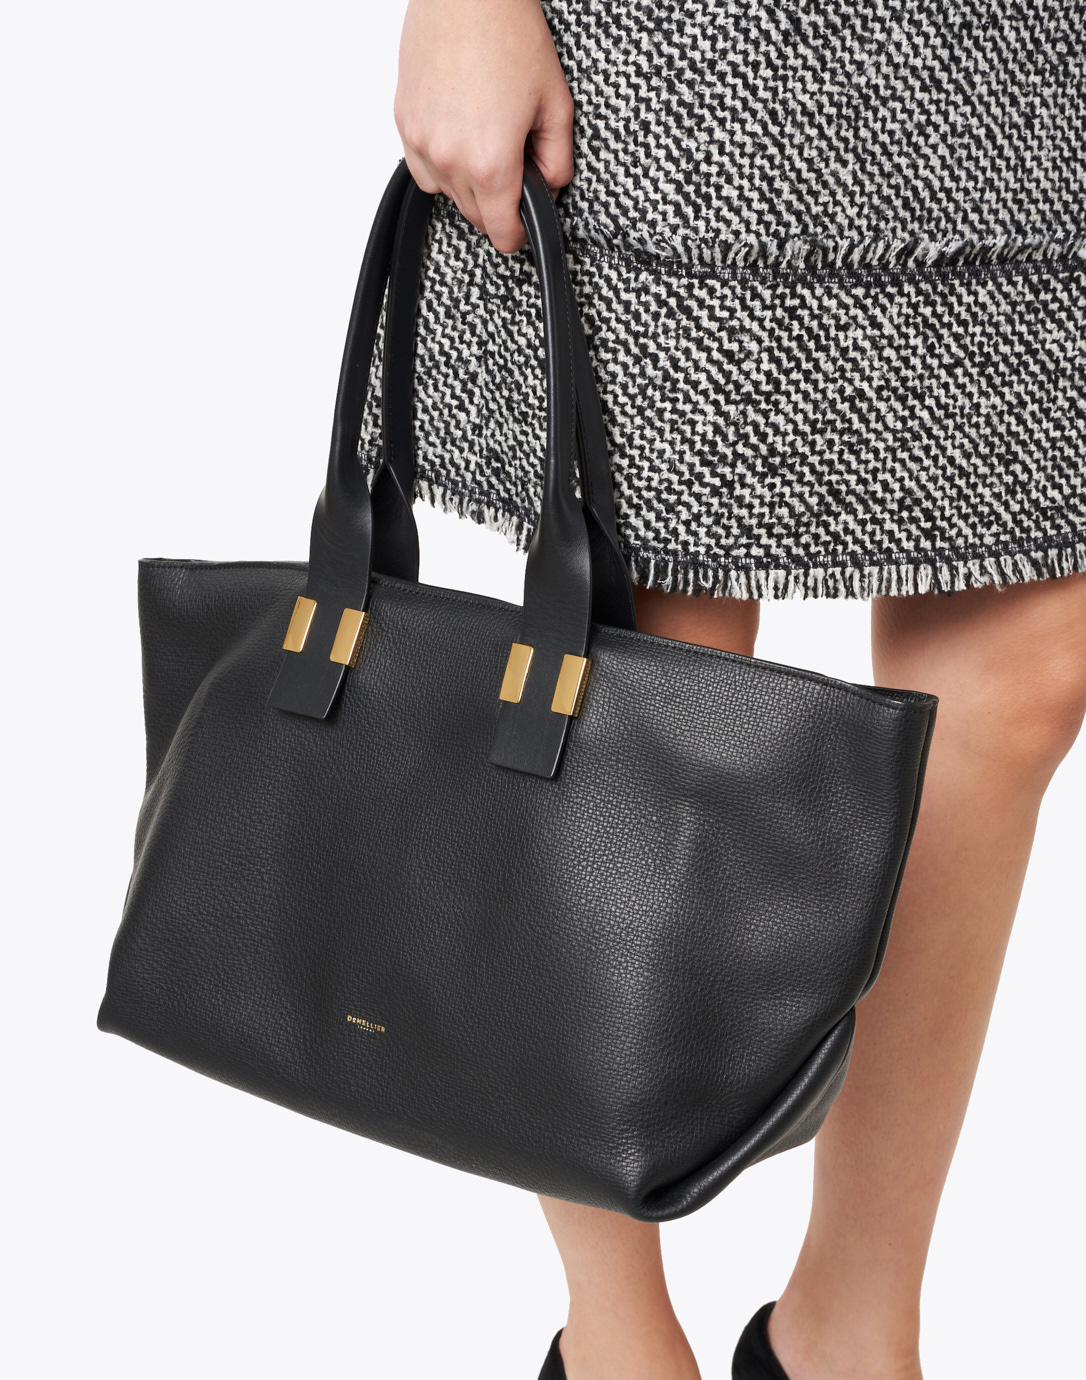 Melbourne Black Textured Leather Tote Bag | DeMellier | Halsbrook